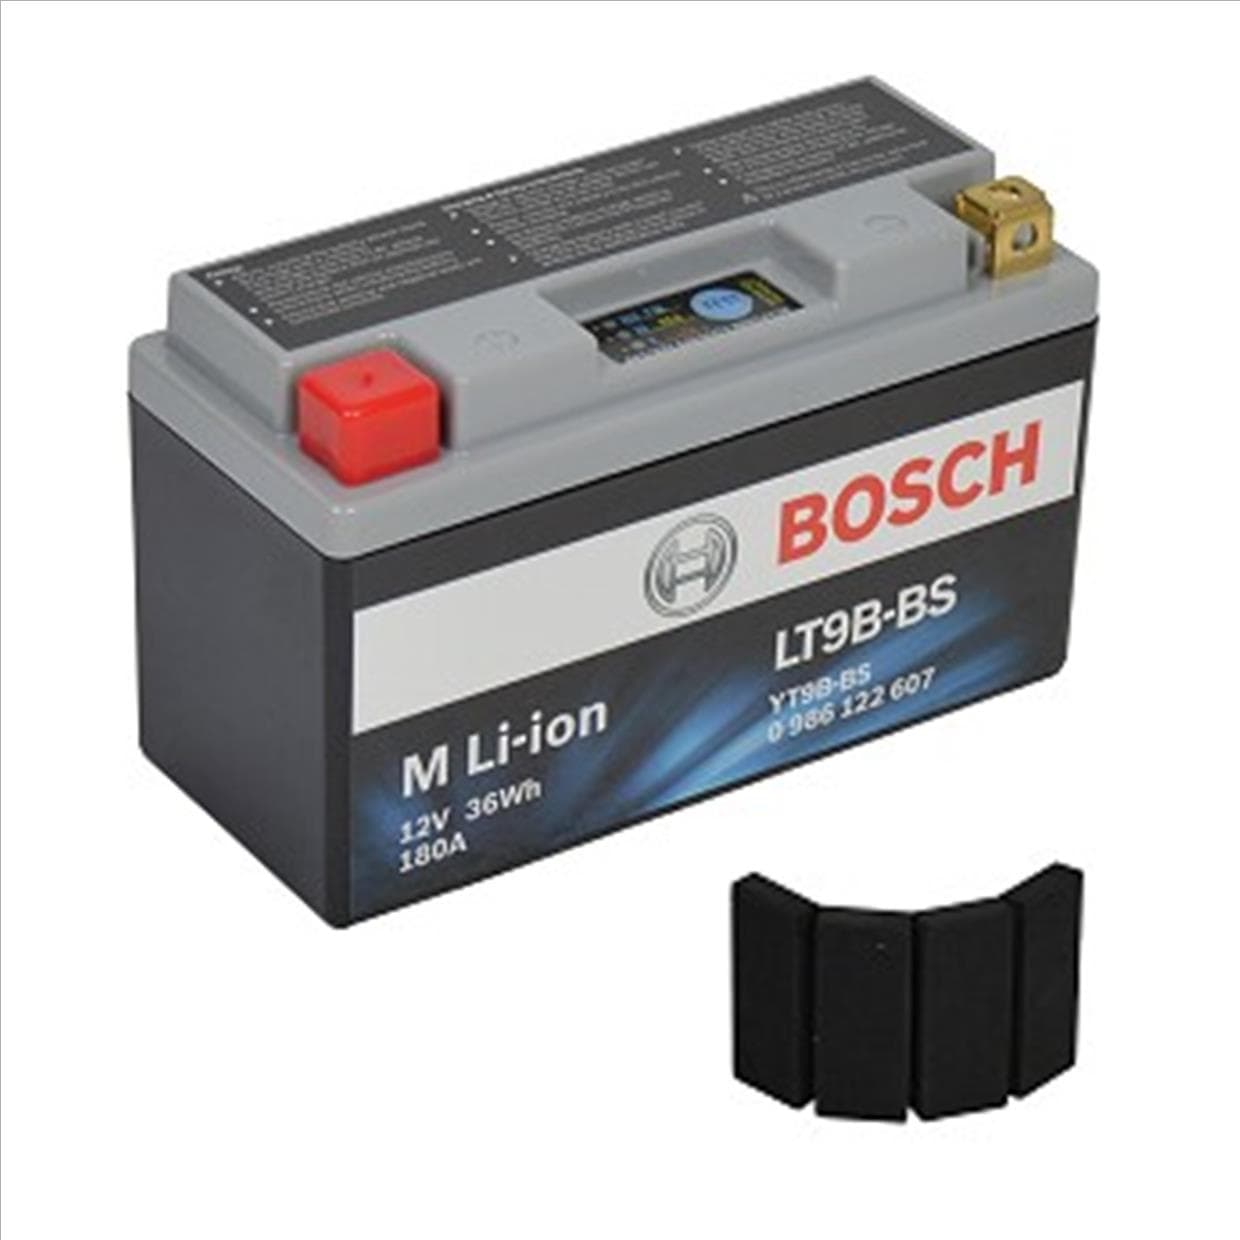 MC-Batteri Litium 3-6Ah 180CCA 36Wh